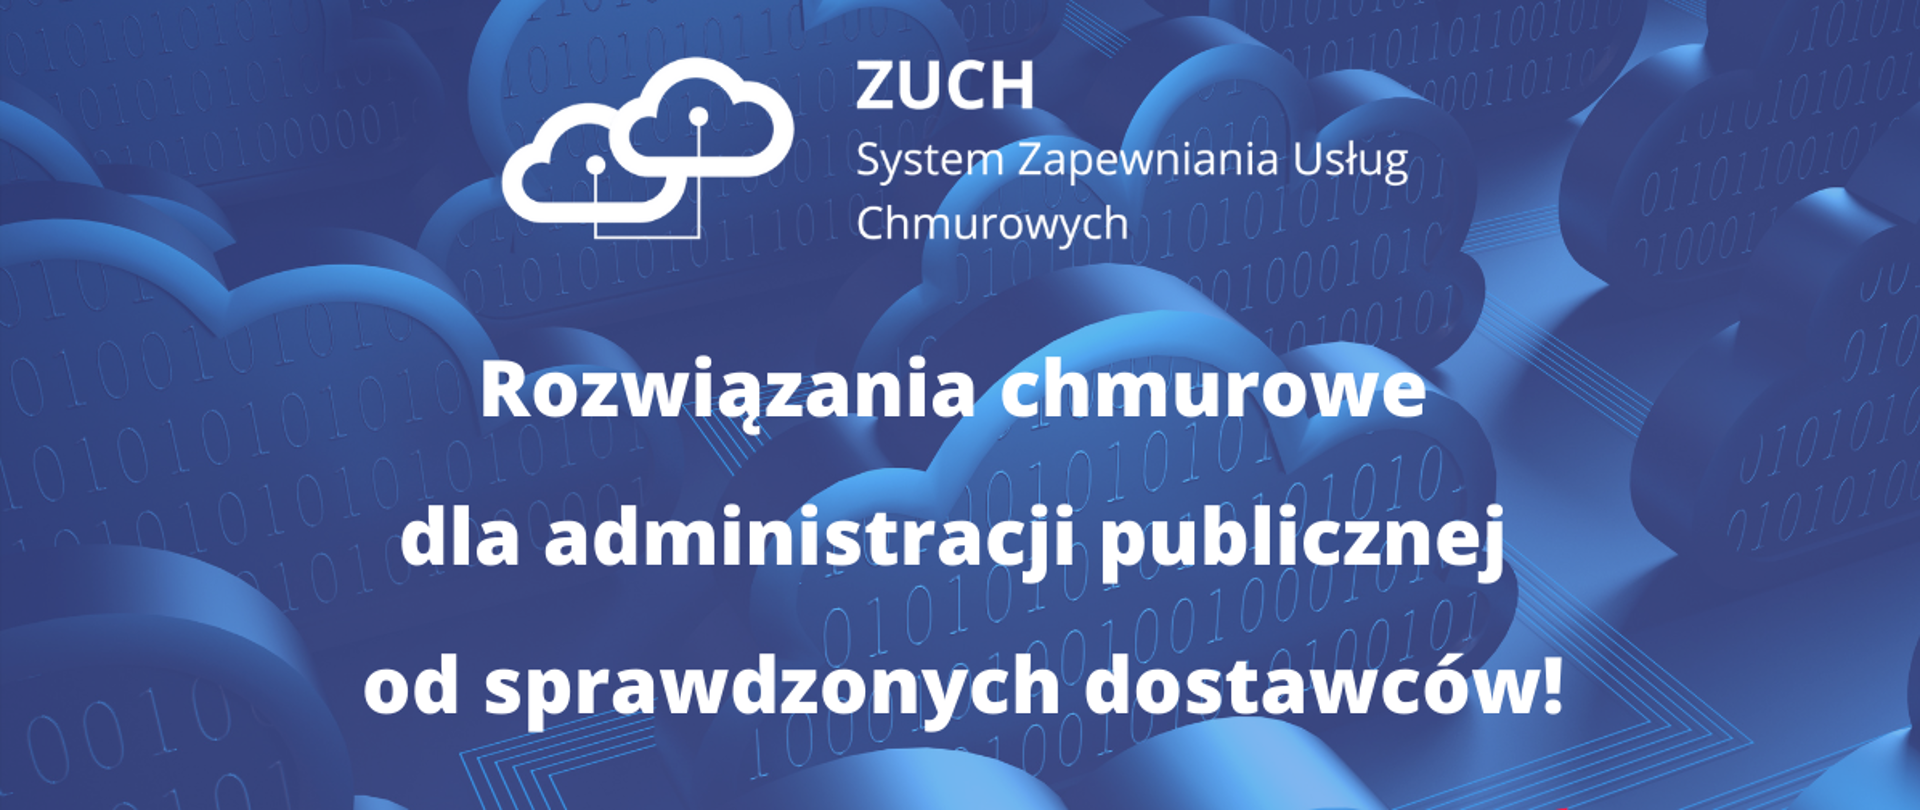 Na niebieskim tle biały napis: ZUCH - System Zapewniania Usług Chmurowych. Rozwiązania chmurowe dla administracji publicznej od sprawdzonych dostawców